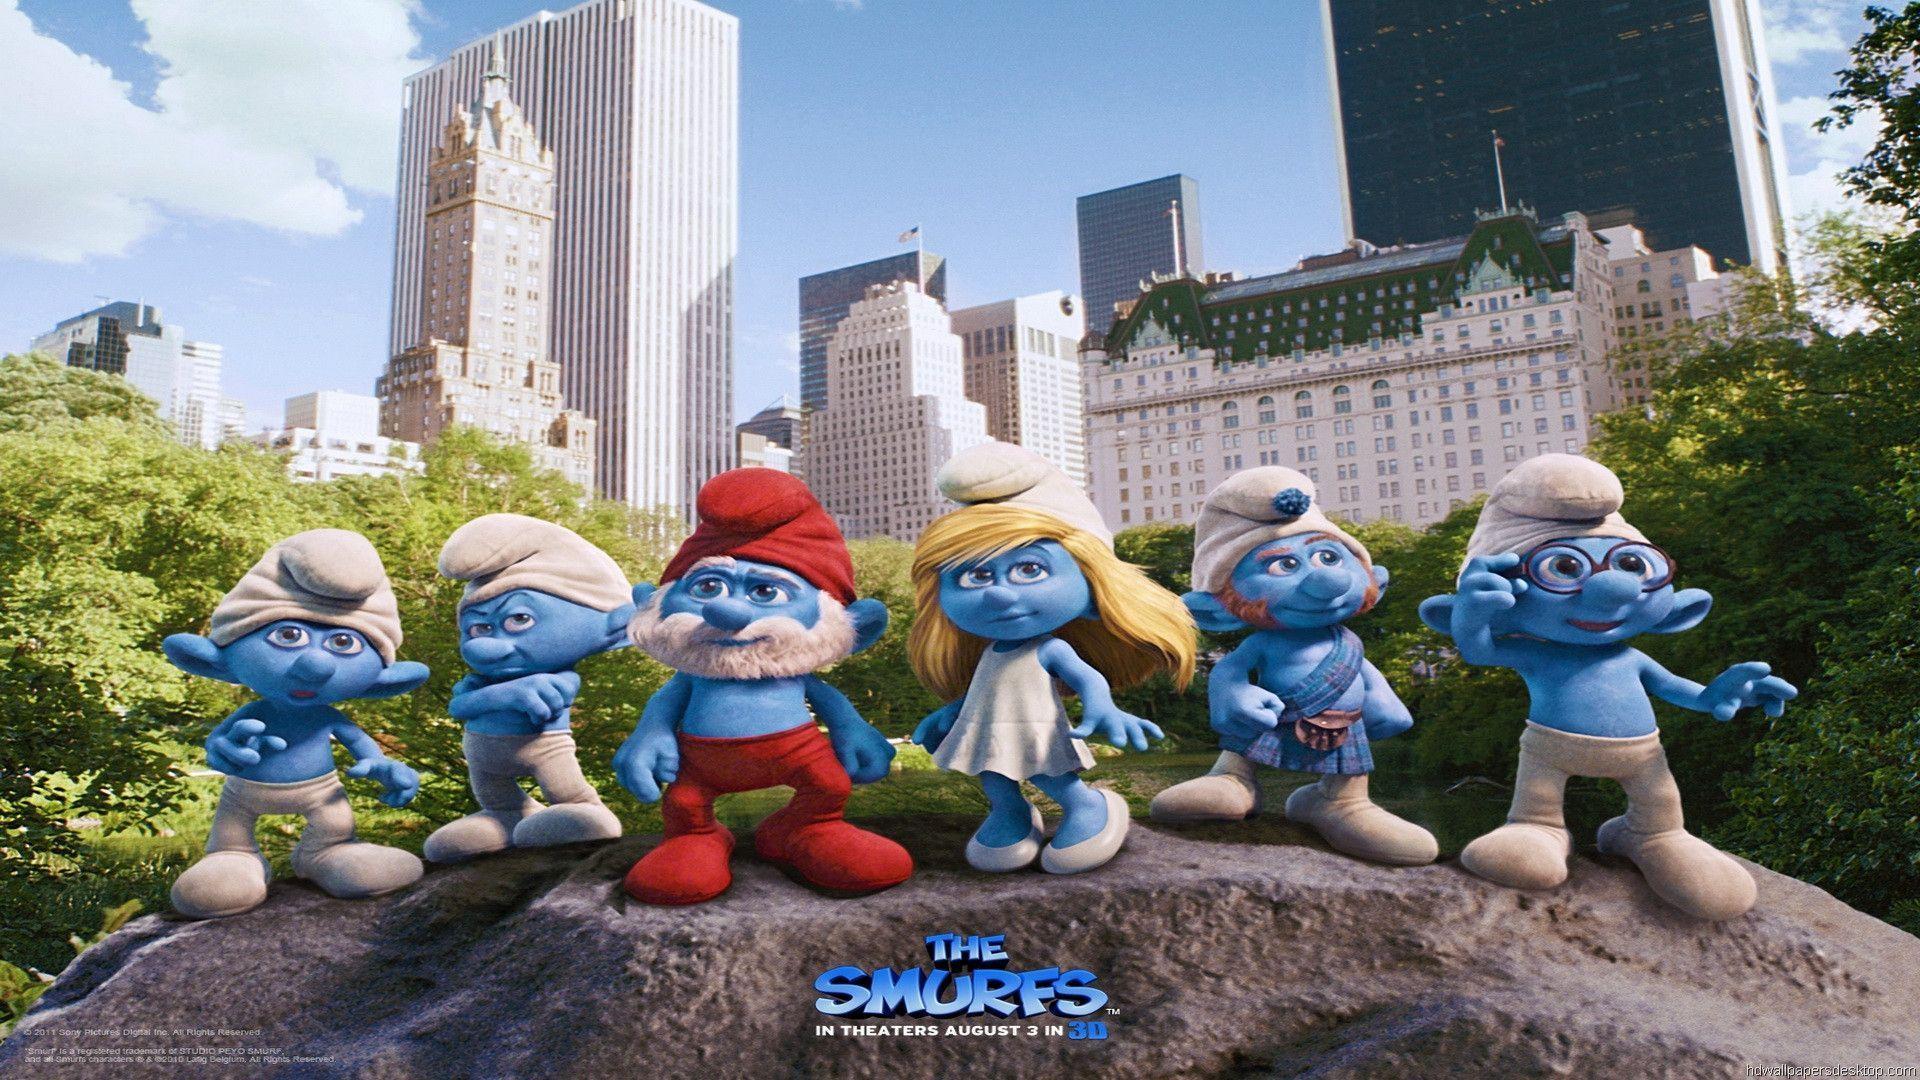 image For > Smurfs Wallpaper For Desktop